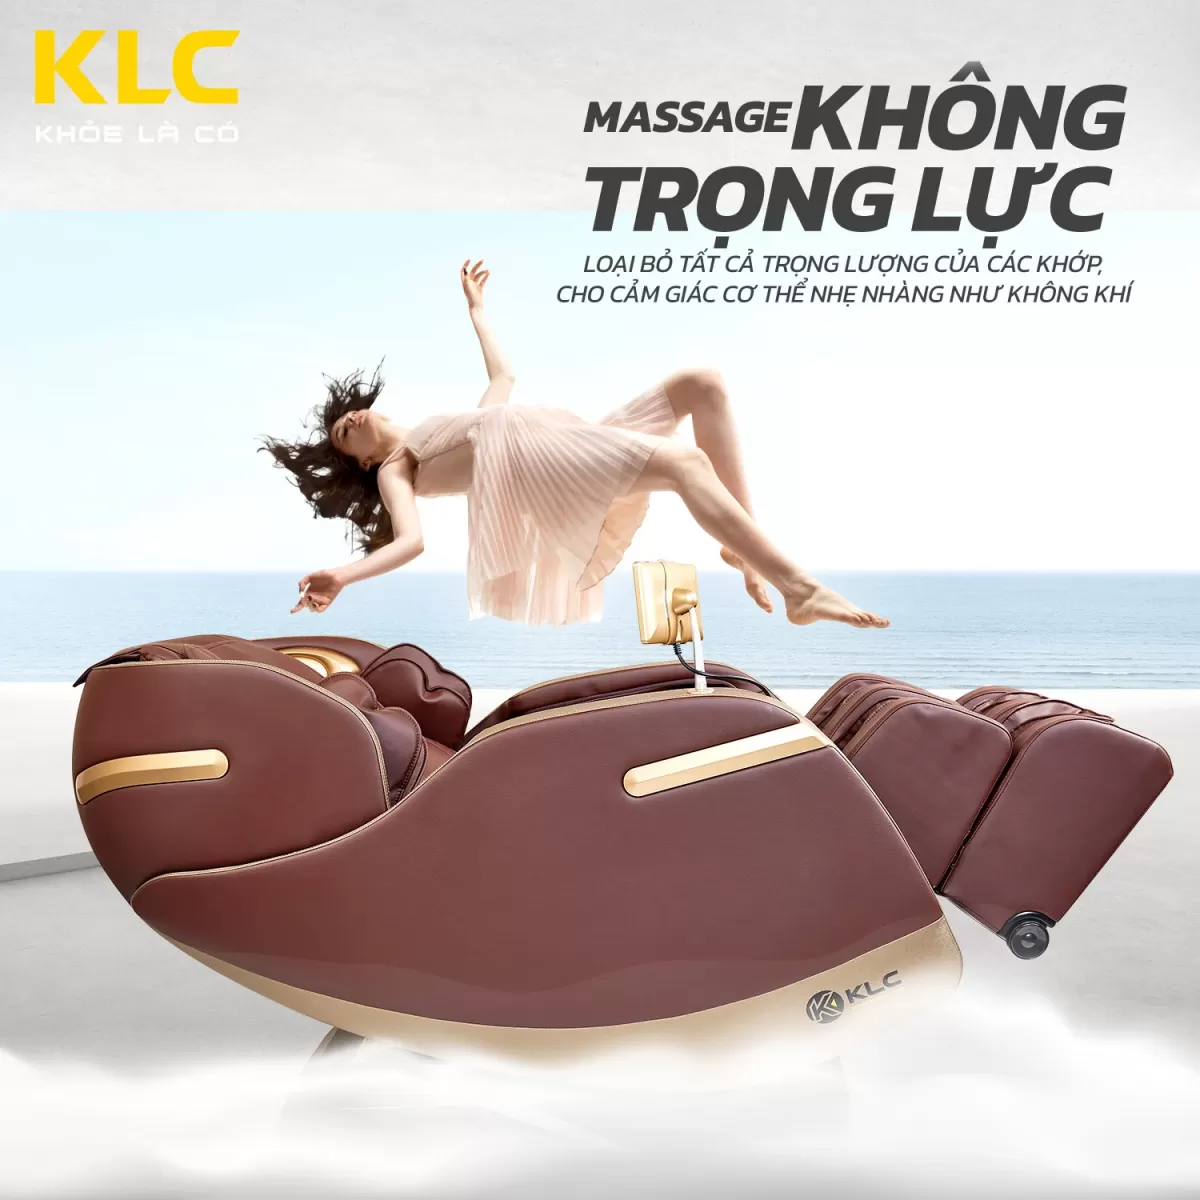 Chế độ không trọng lực của Ghế Massage KLC K228